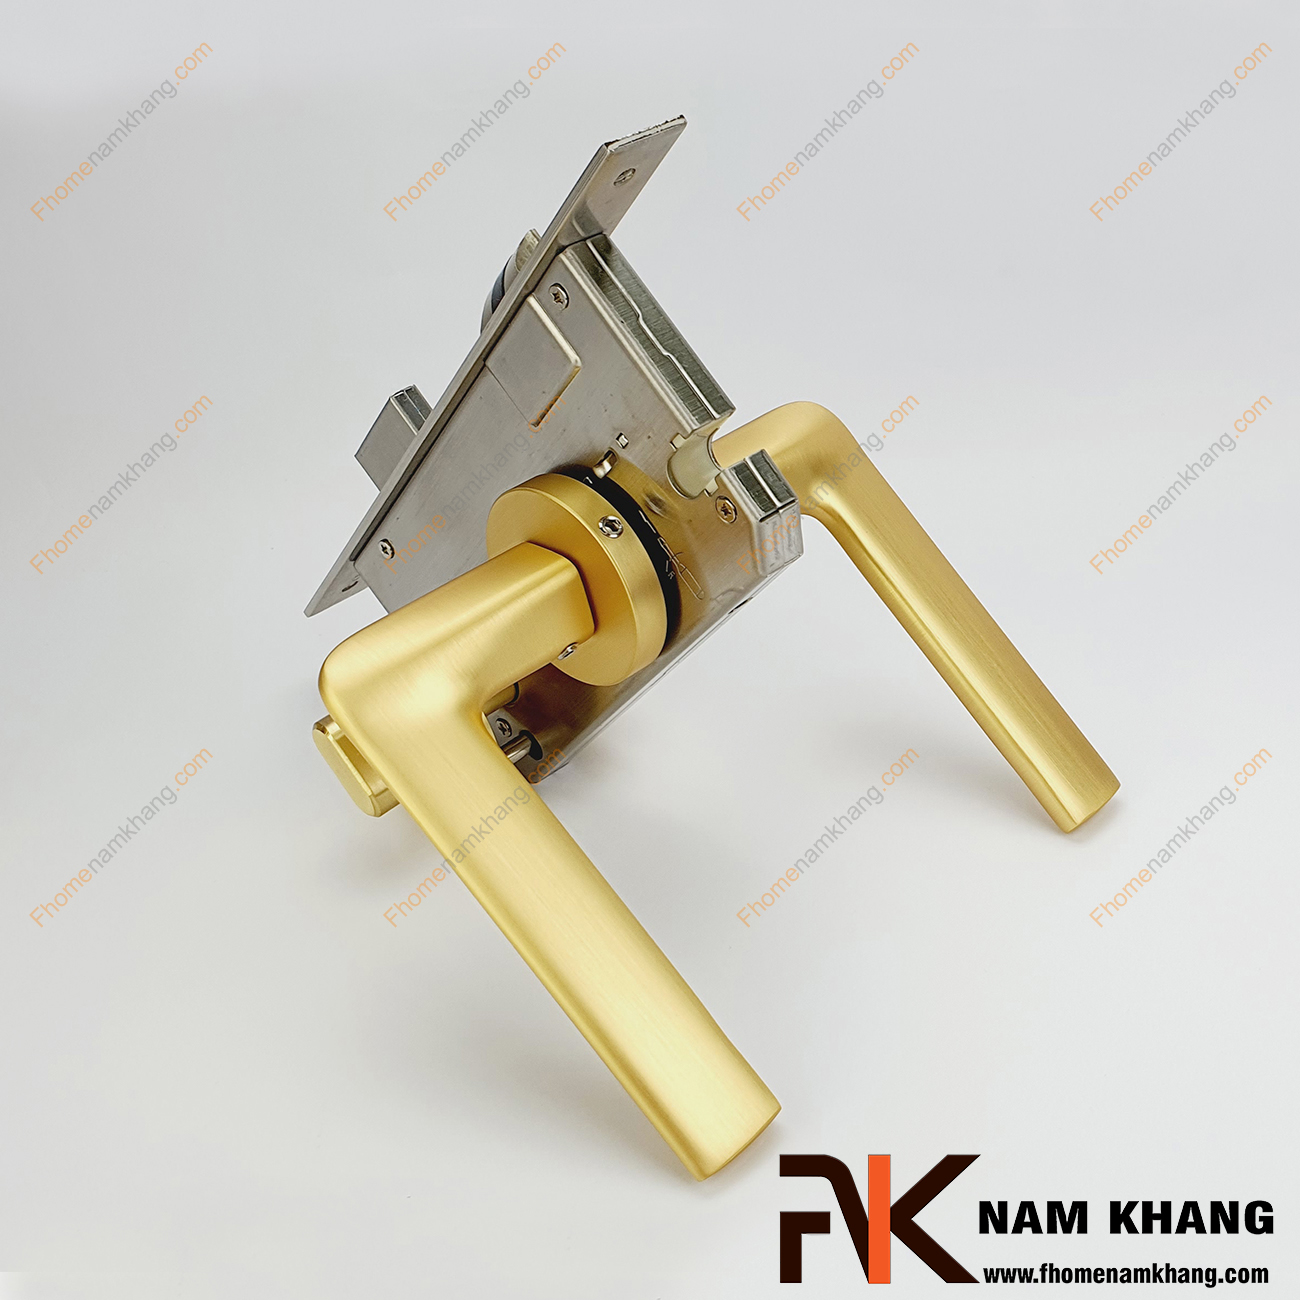 Khóa cửa phân thể dạng trơn màu vàng mờ NK569-VM được sản xuất từ hợp kim cao cấp. Dòng khóa này có thiết kế đơn giản, nhỏ gọn, phù hợp lắp đặt cho đa dạng không gian thiết kế nhà ở.